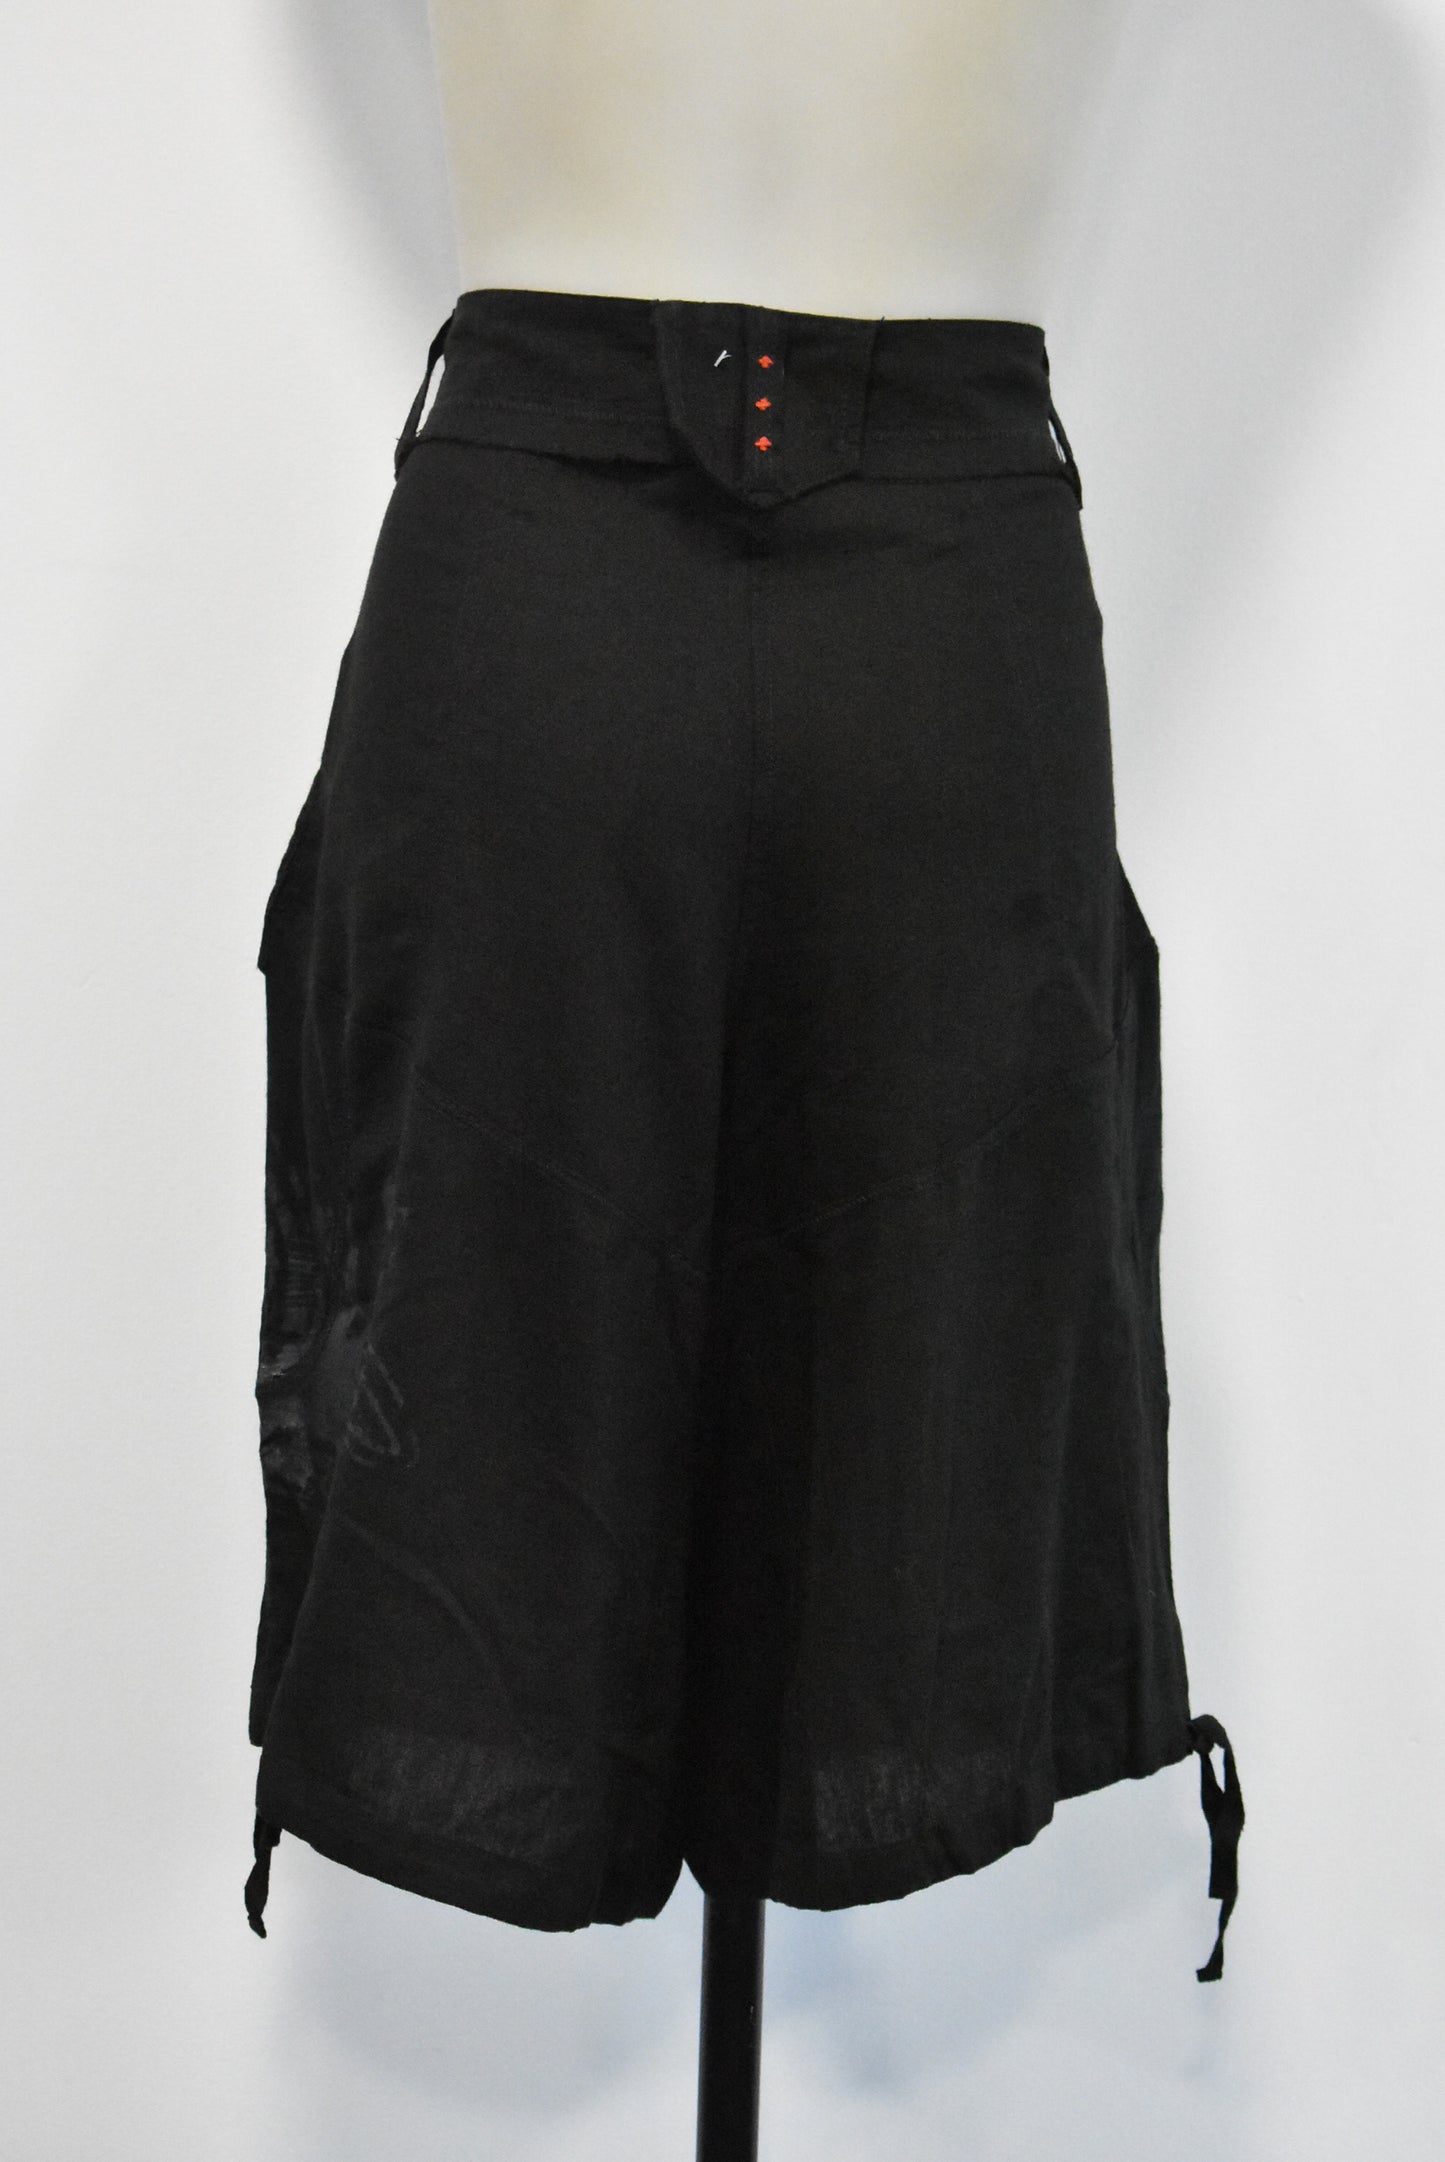 Brand 983 linen blend shorts, 12